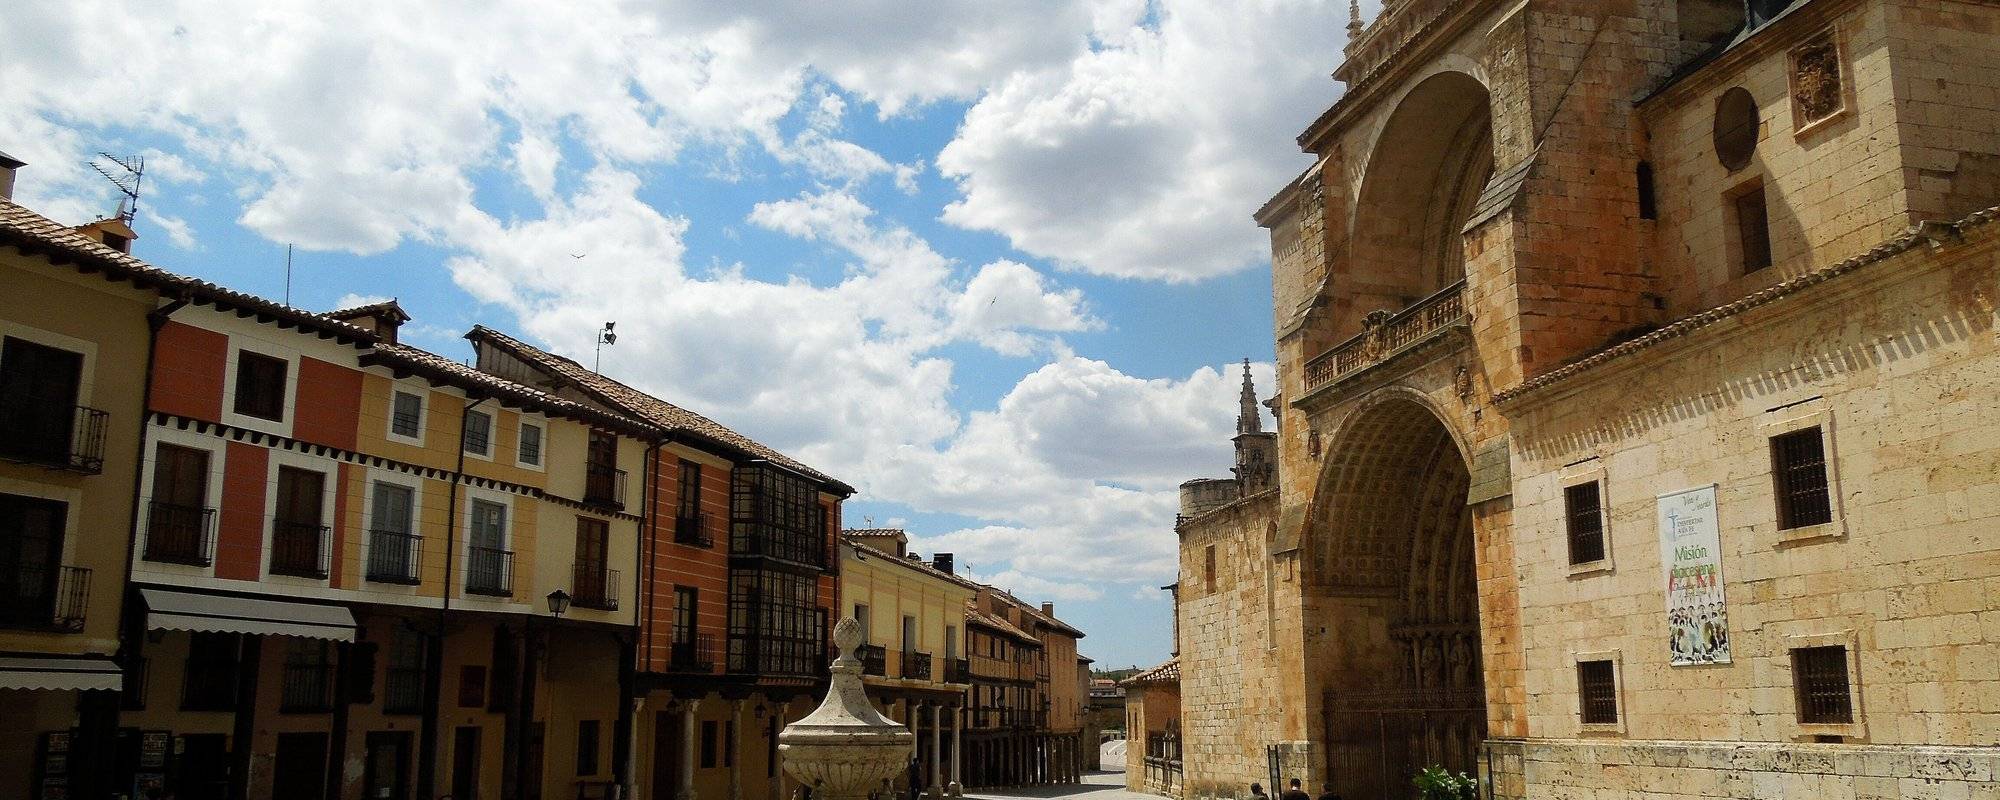 Villages with Art: Burgo de Osma, Soria